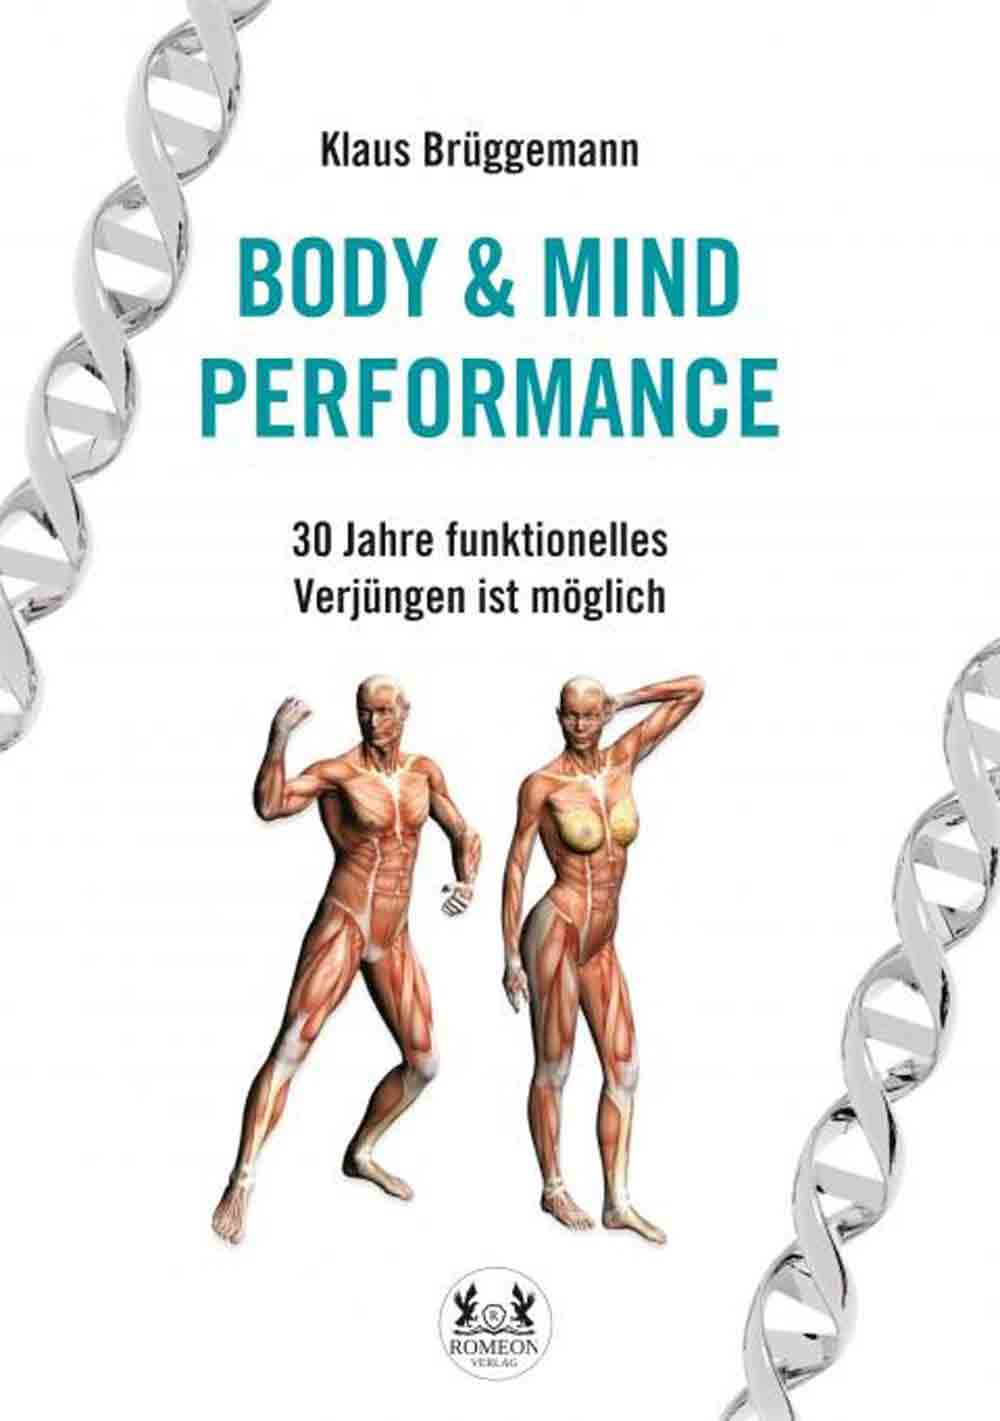 Lesetipps für Gütersloh, Klaus Brüggemann, Body & Mind Performance